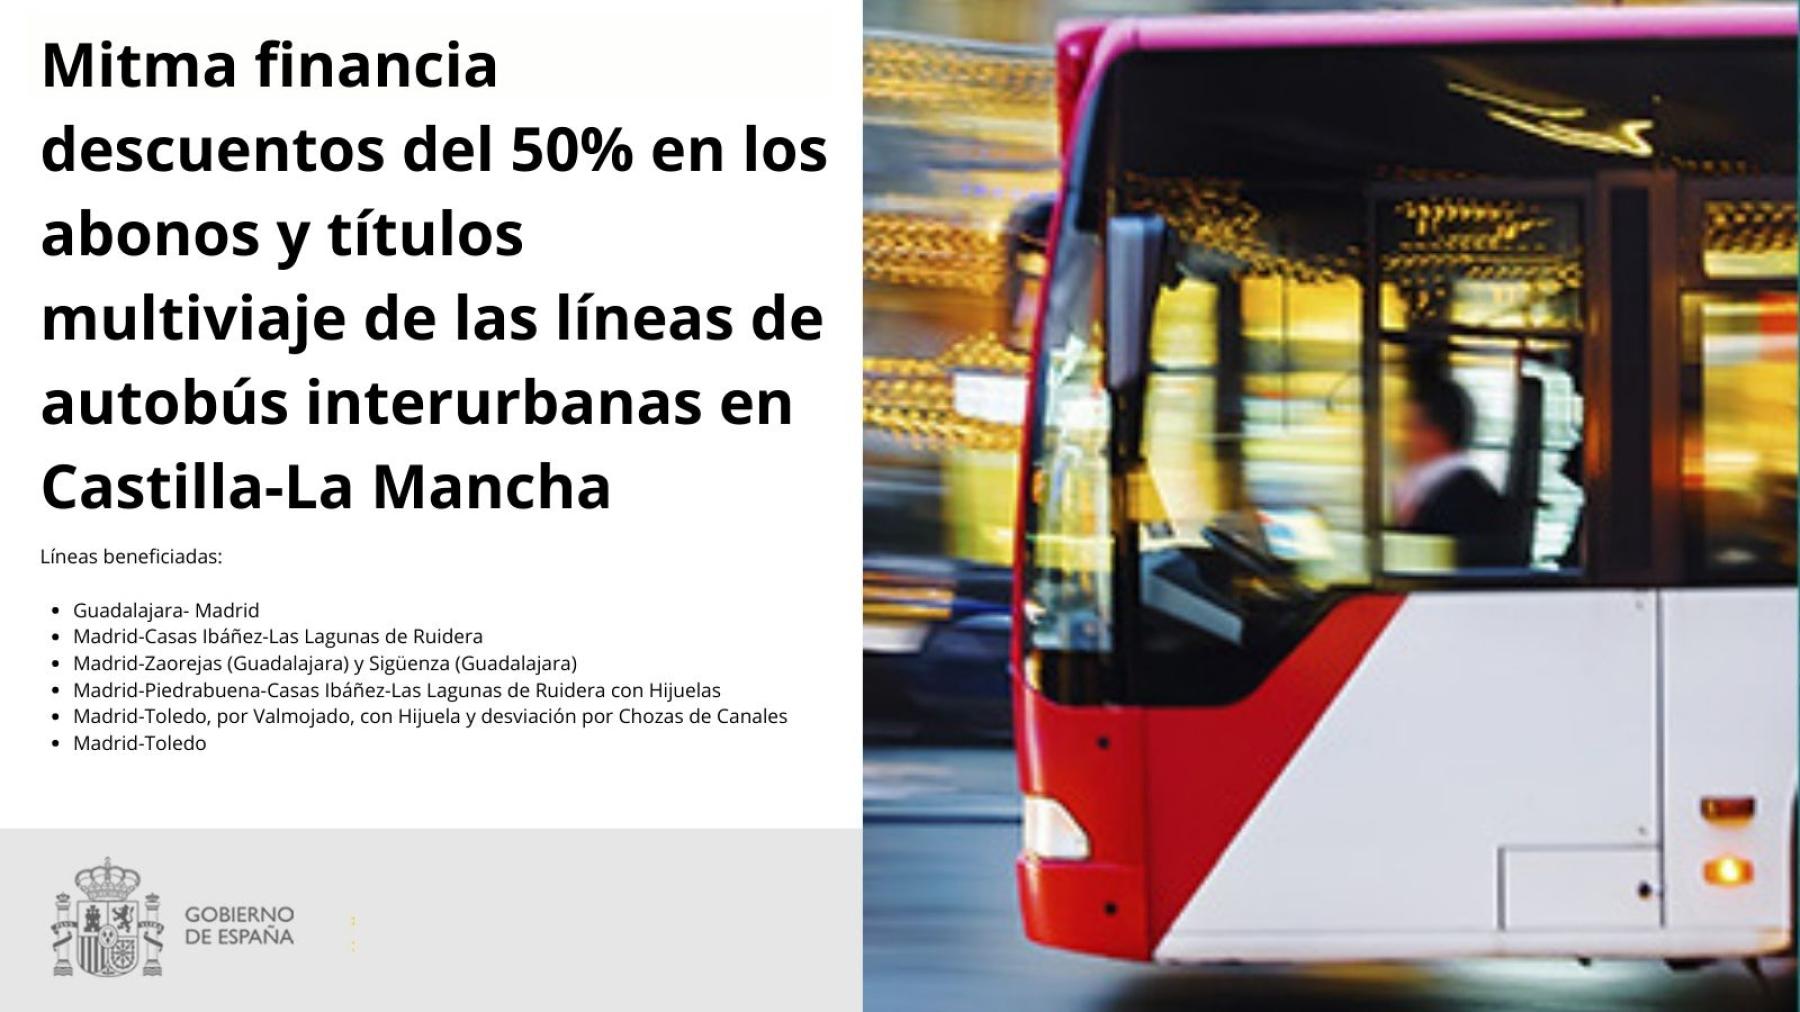 Mitma financia descuentos del 50% en los abonos y títulos multiviaje de las líneas de autobús interurbanas en Castilla-La Mancha